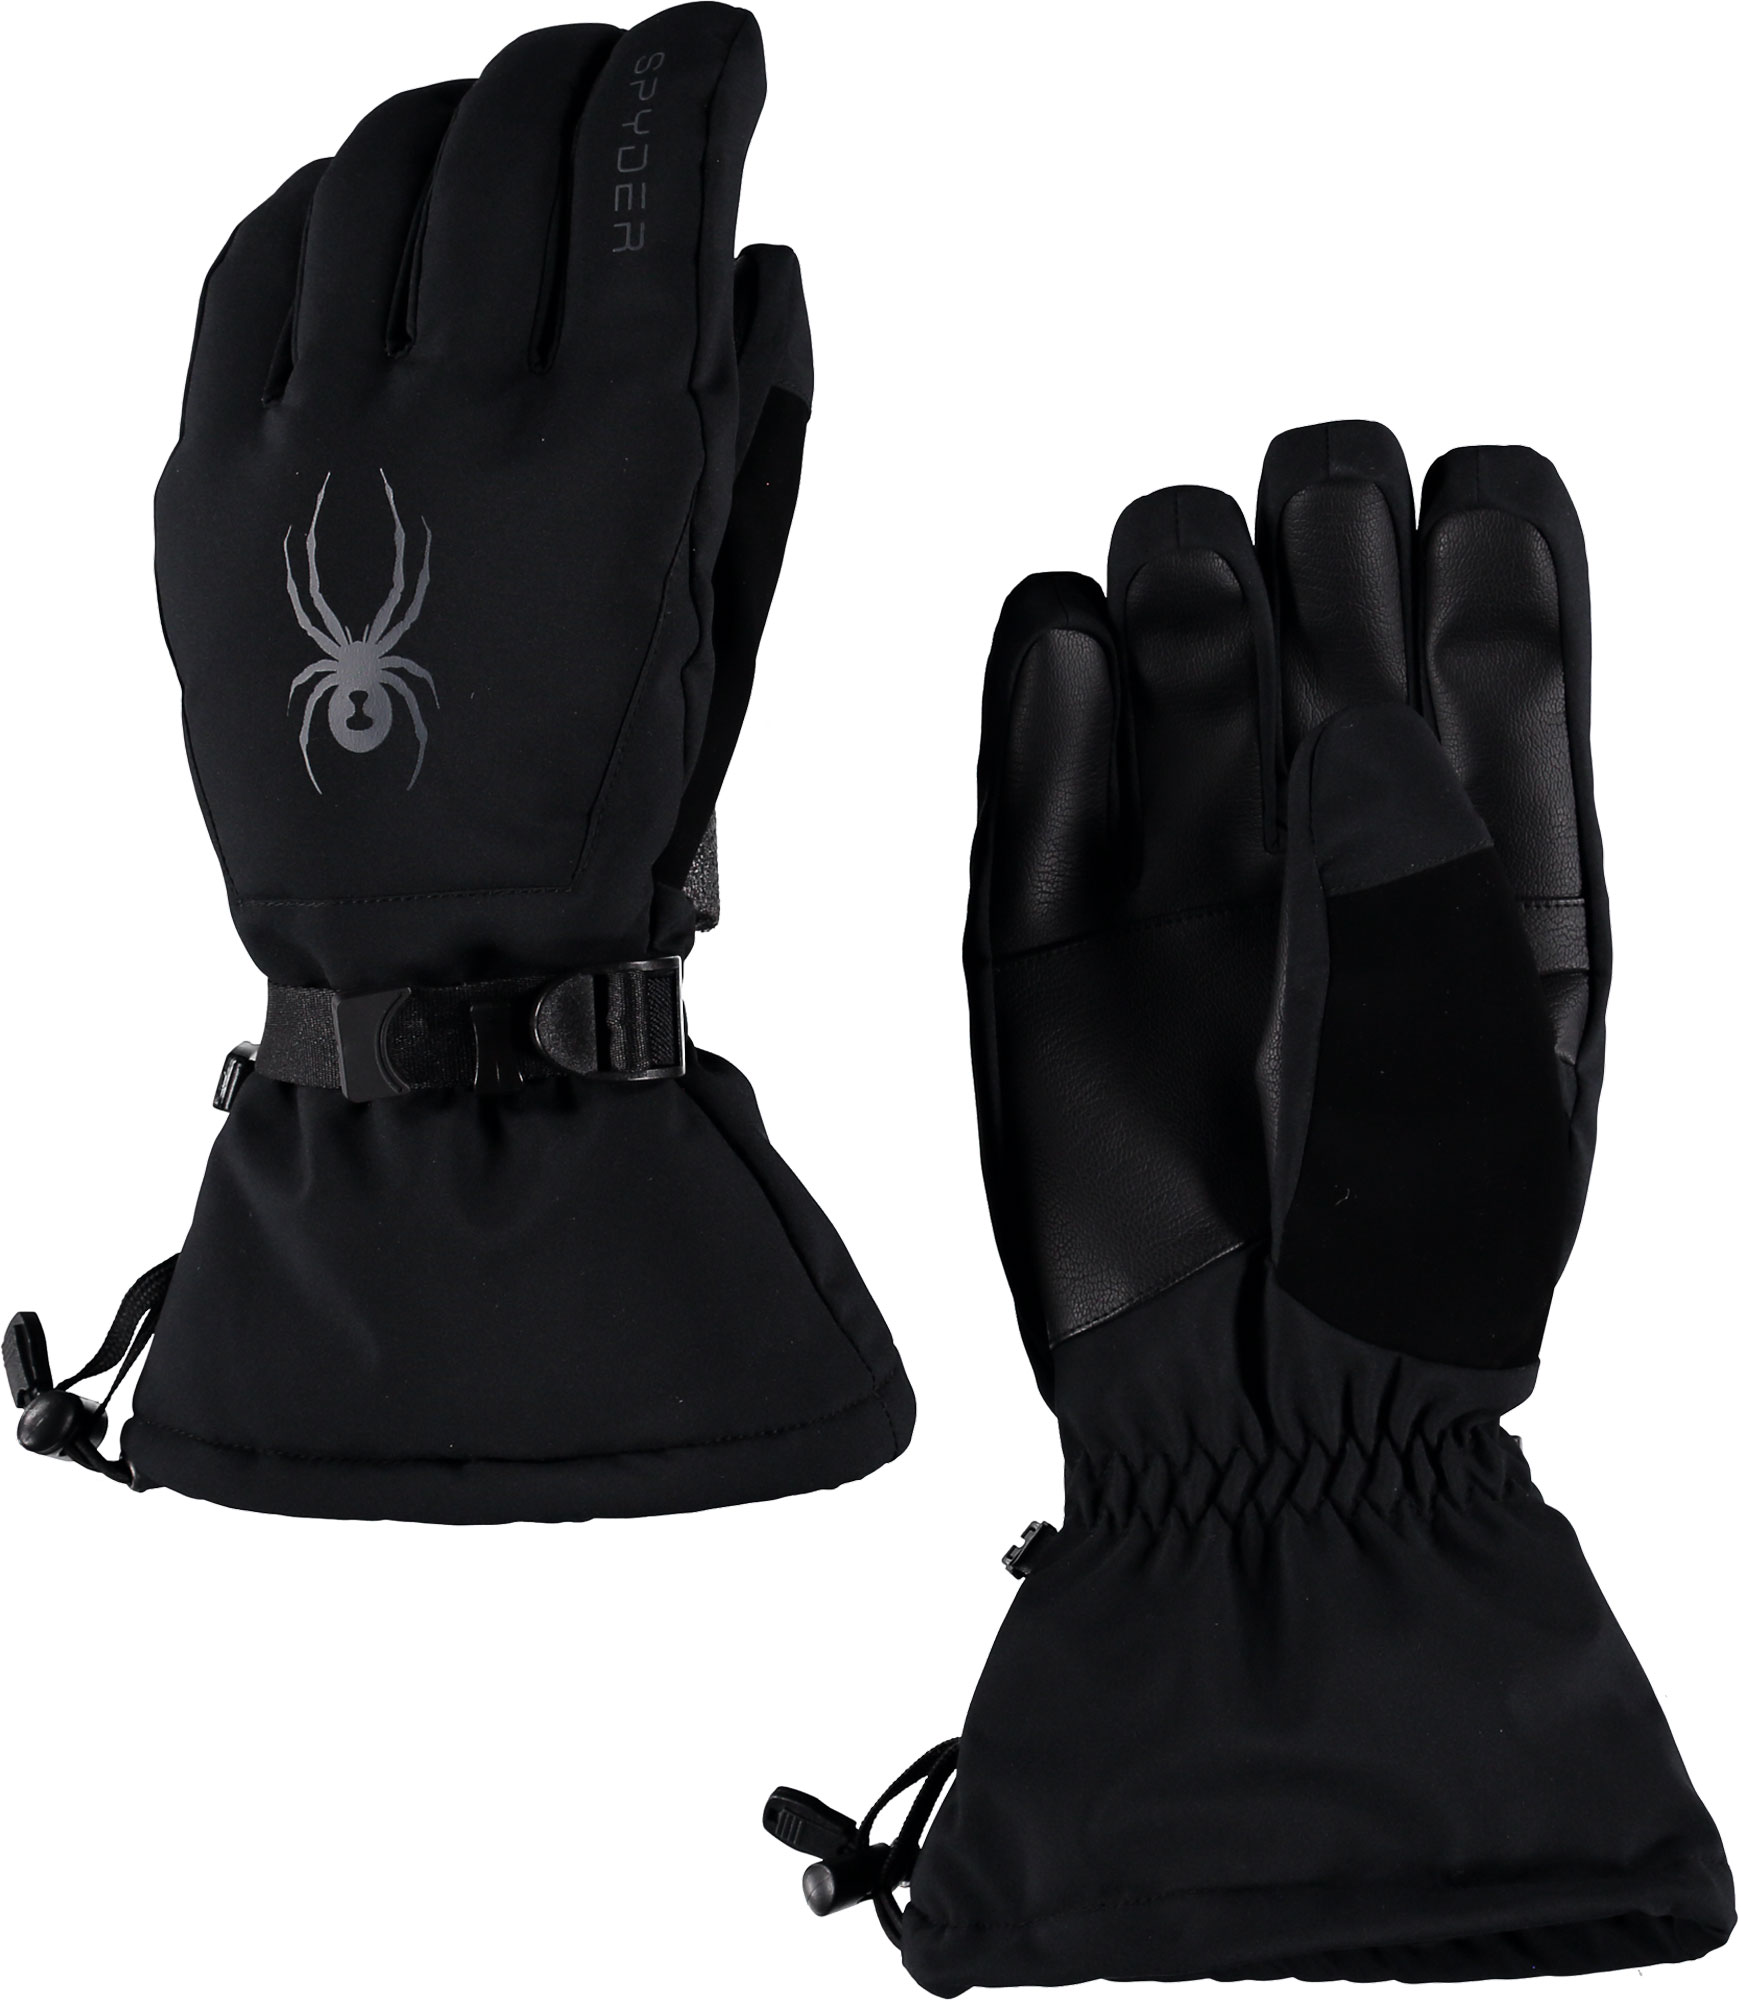 Men’s ski gloves